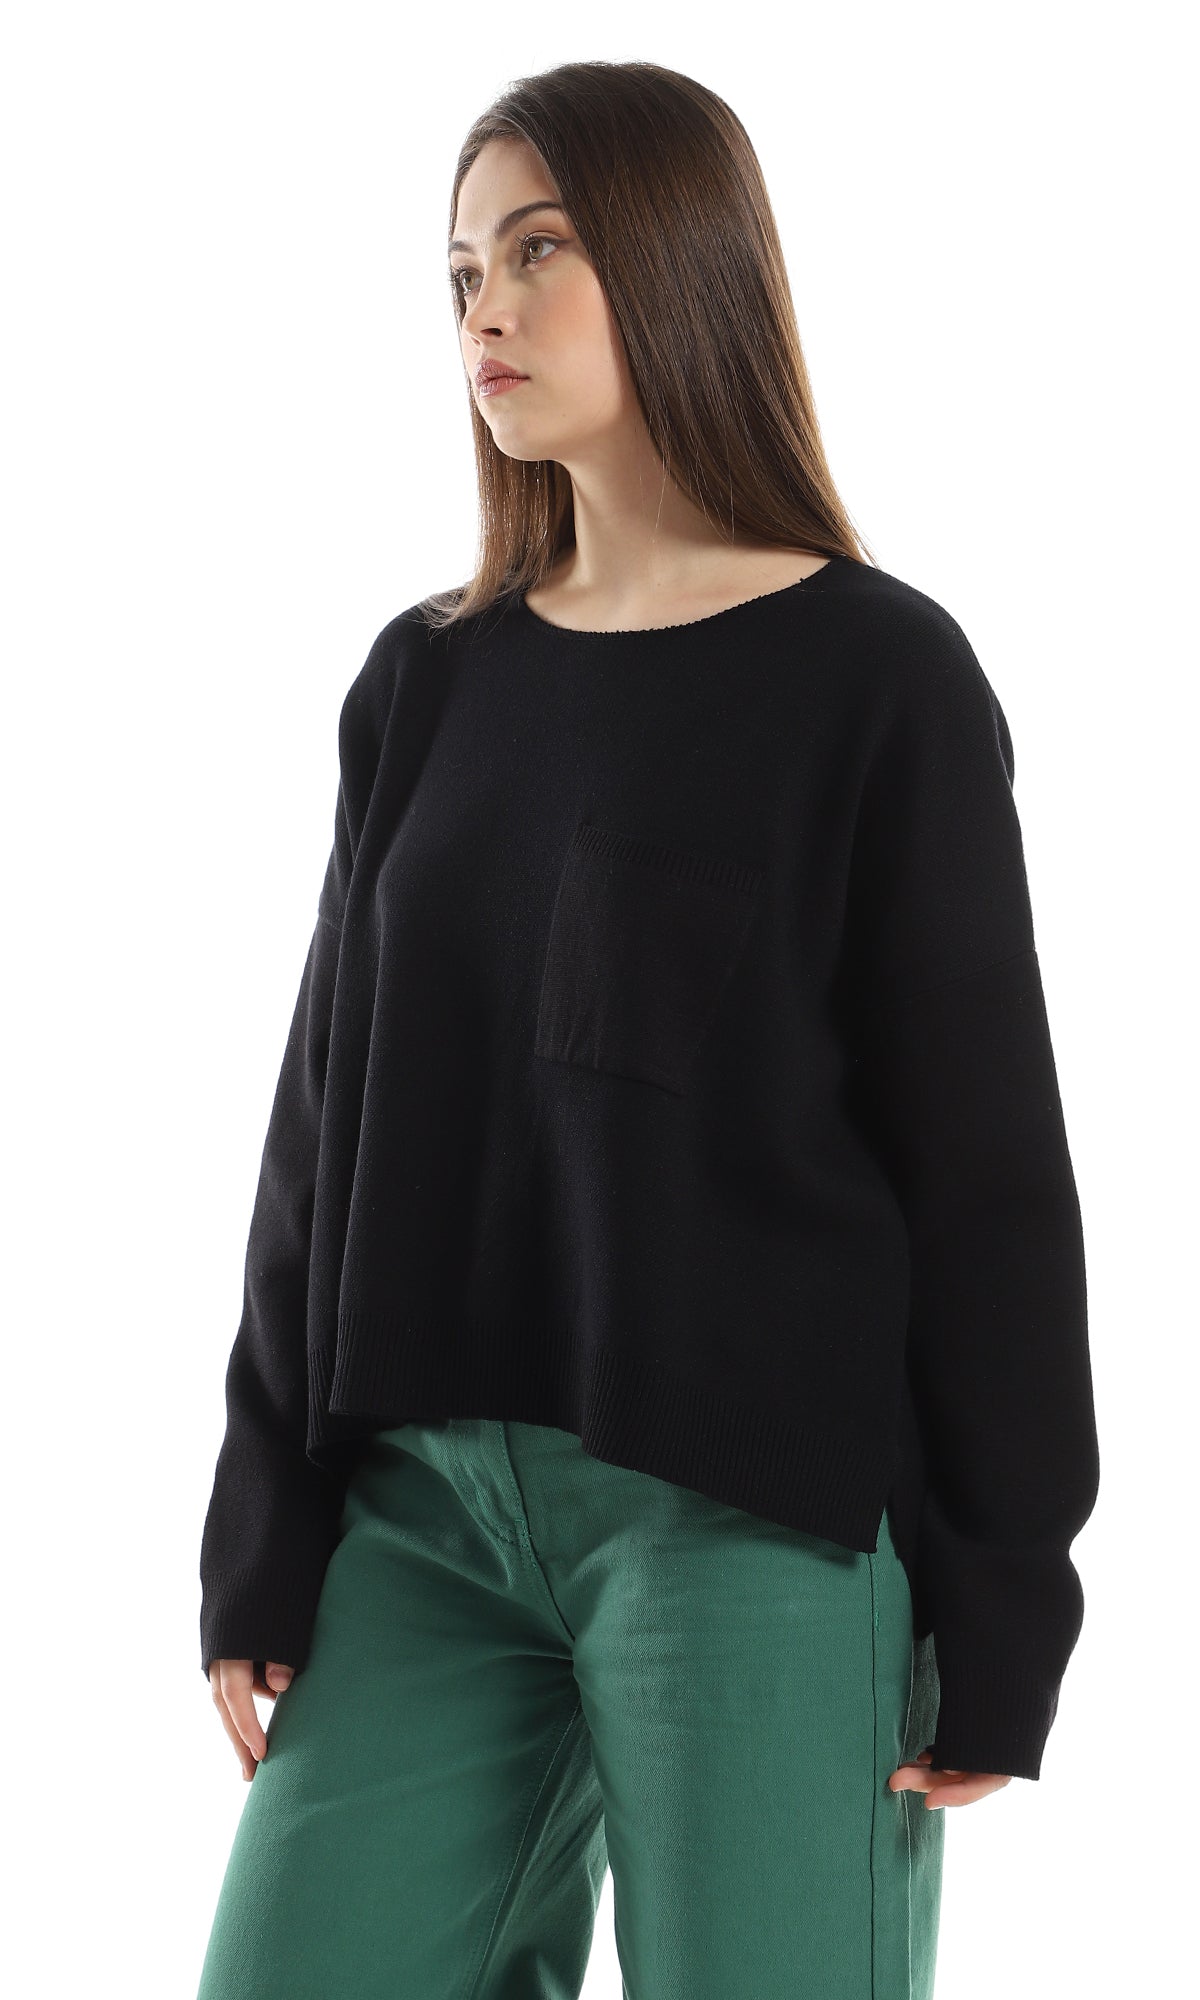 O162568 Side Slits Basic Black Pullover With Side Pocket